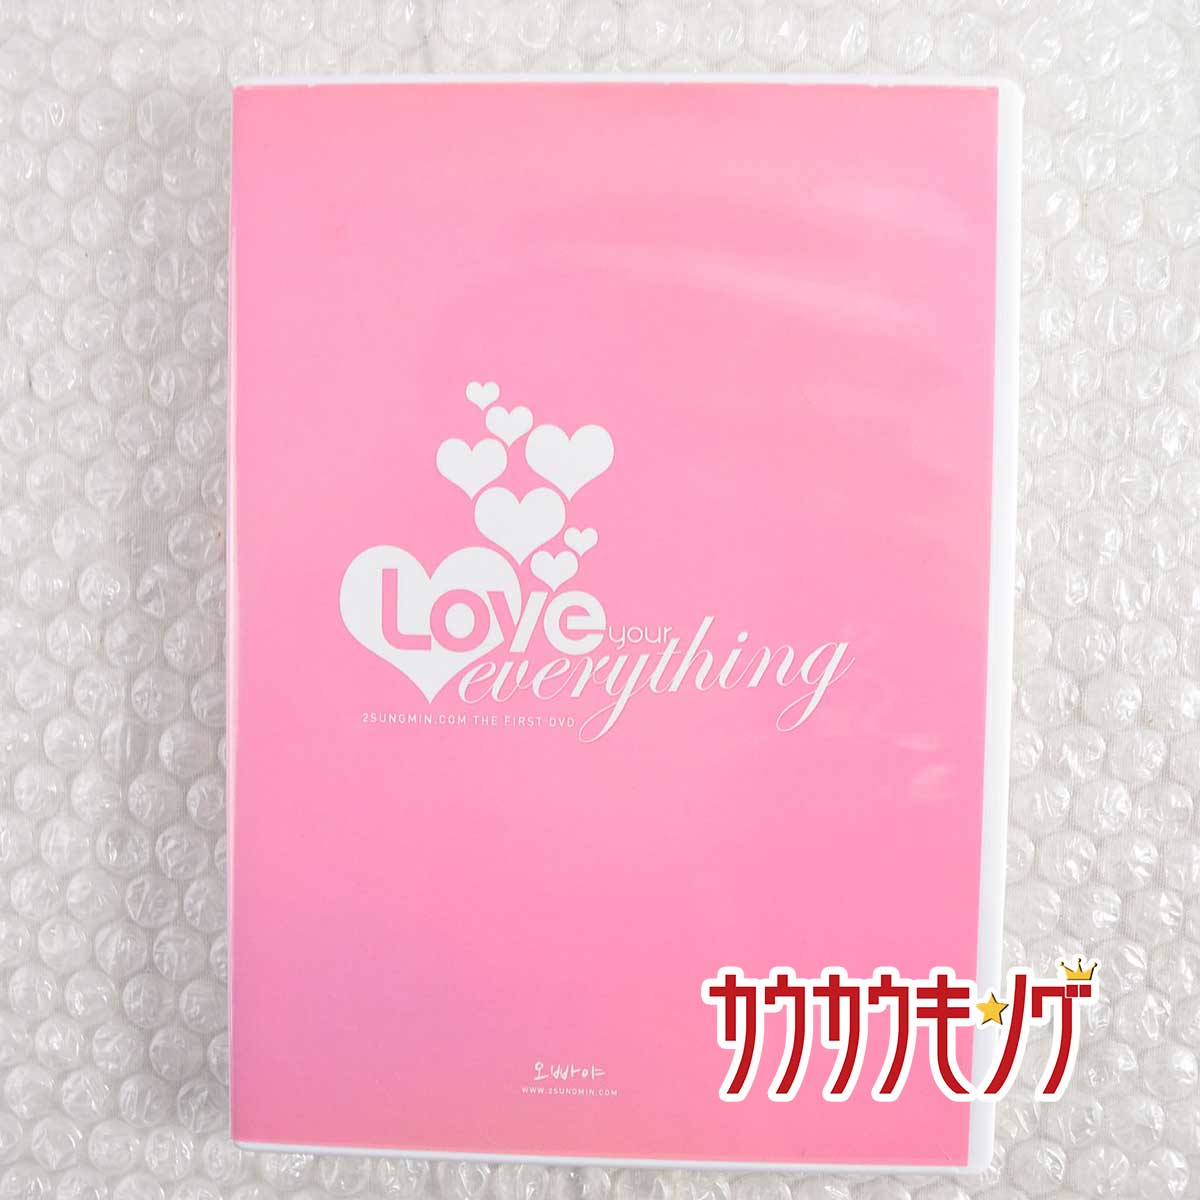 【中古】OPPAYA SUNGMIN.COM THE FIRST LOVE YOUR EVERYTHING 韓国版 DVD 2枚組 /ソンミン/Super Junior